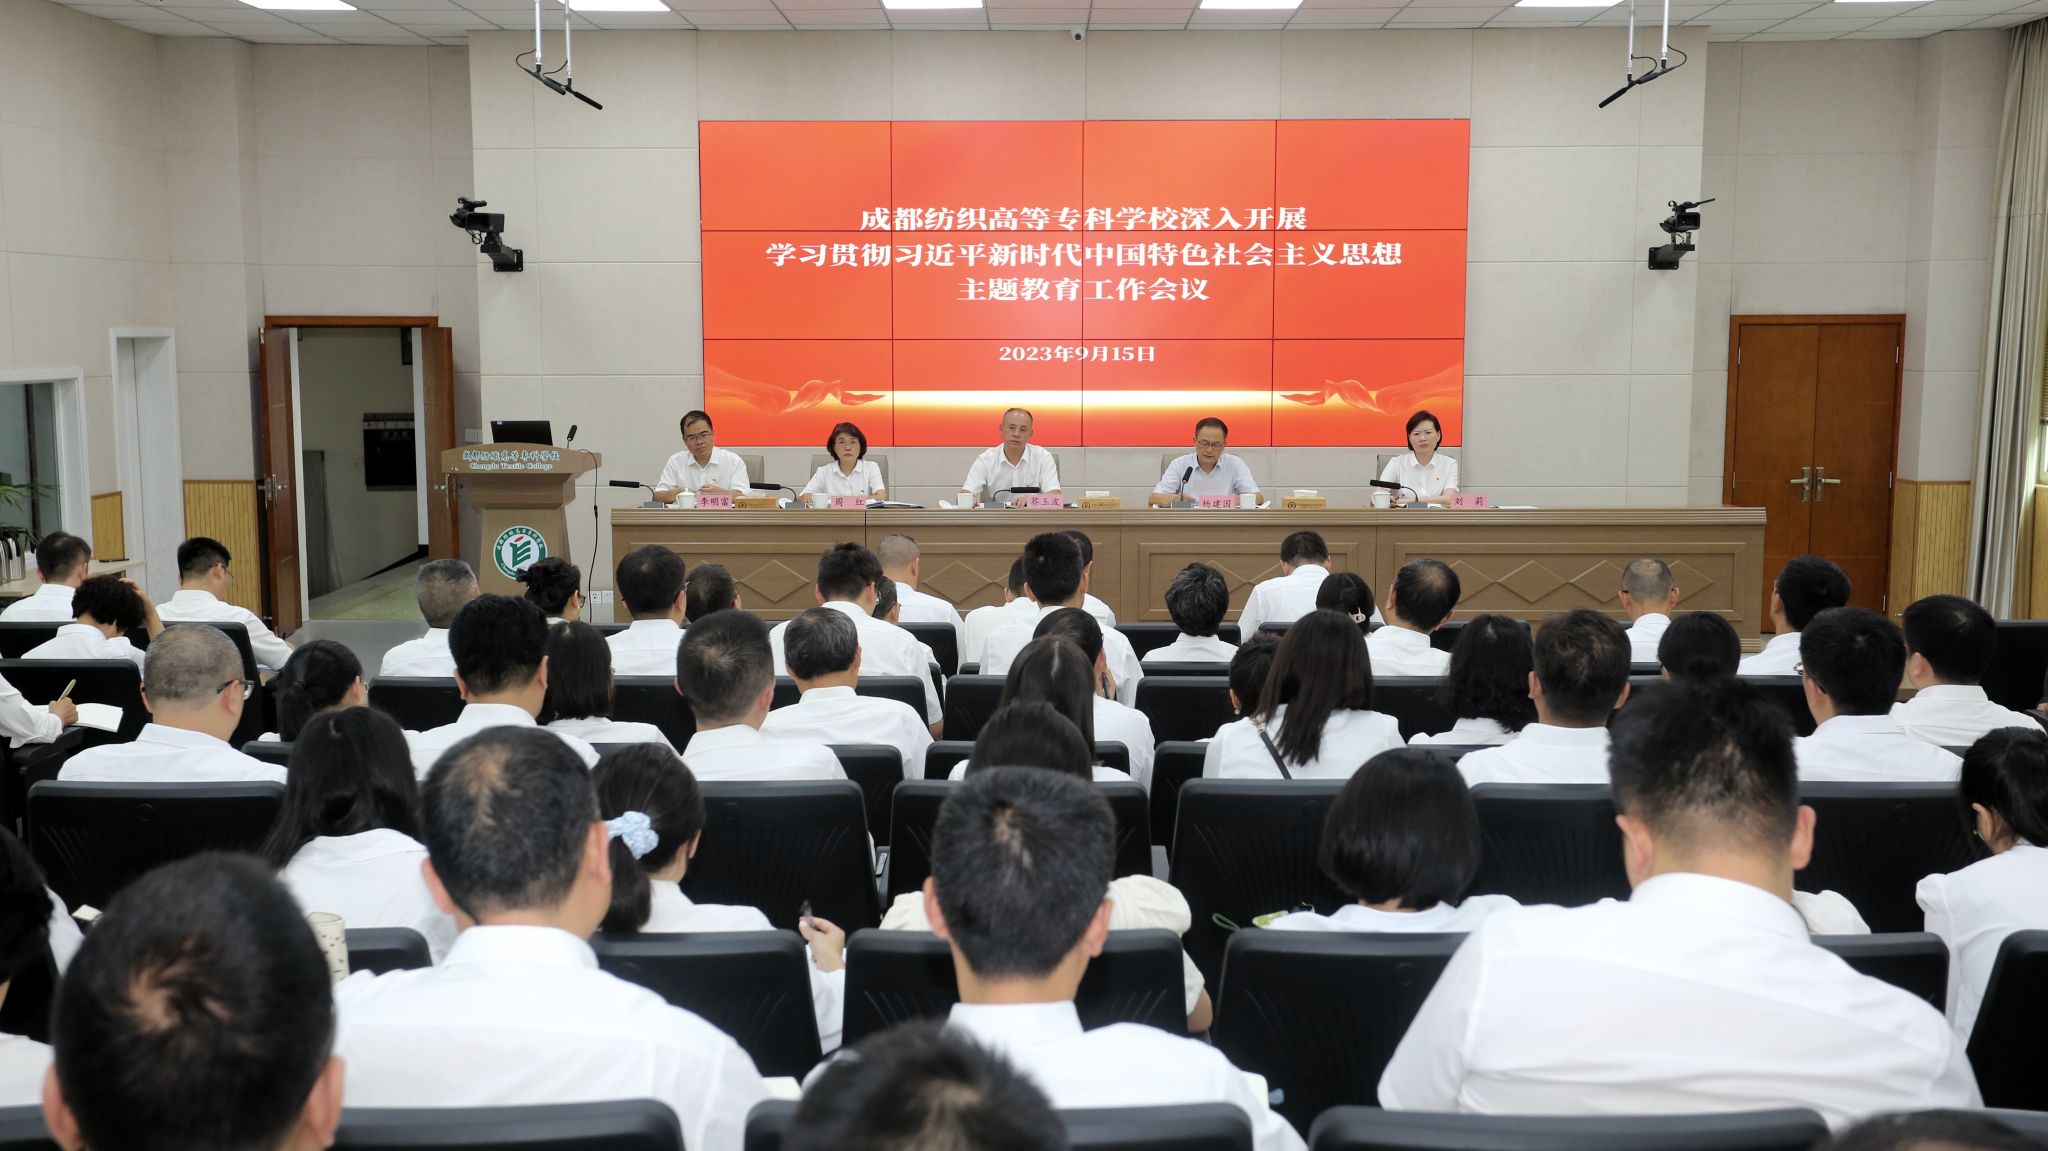 学校召开深入开展学习贯彻习近平新时代中国特色社会主义思想主题教育工作会议